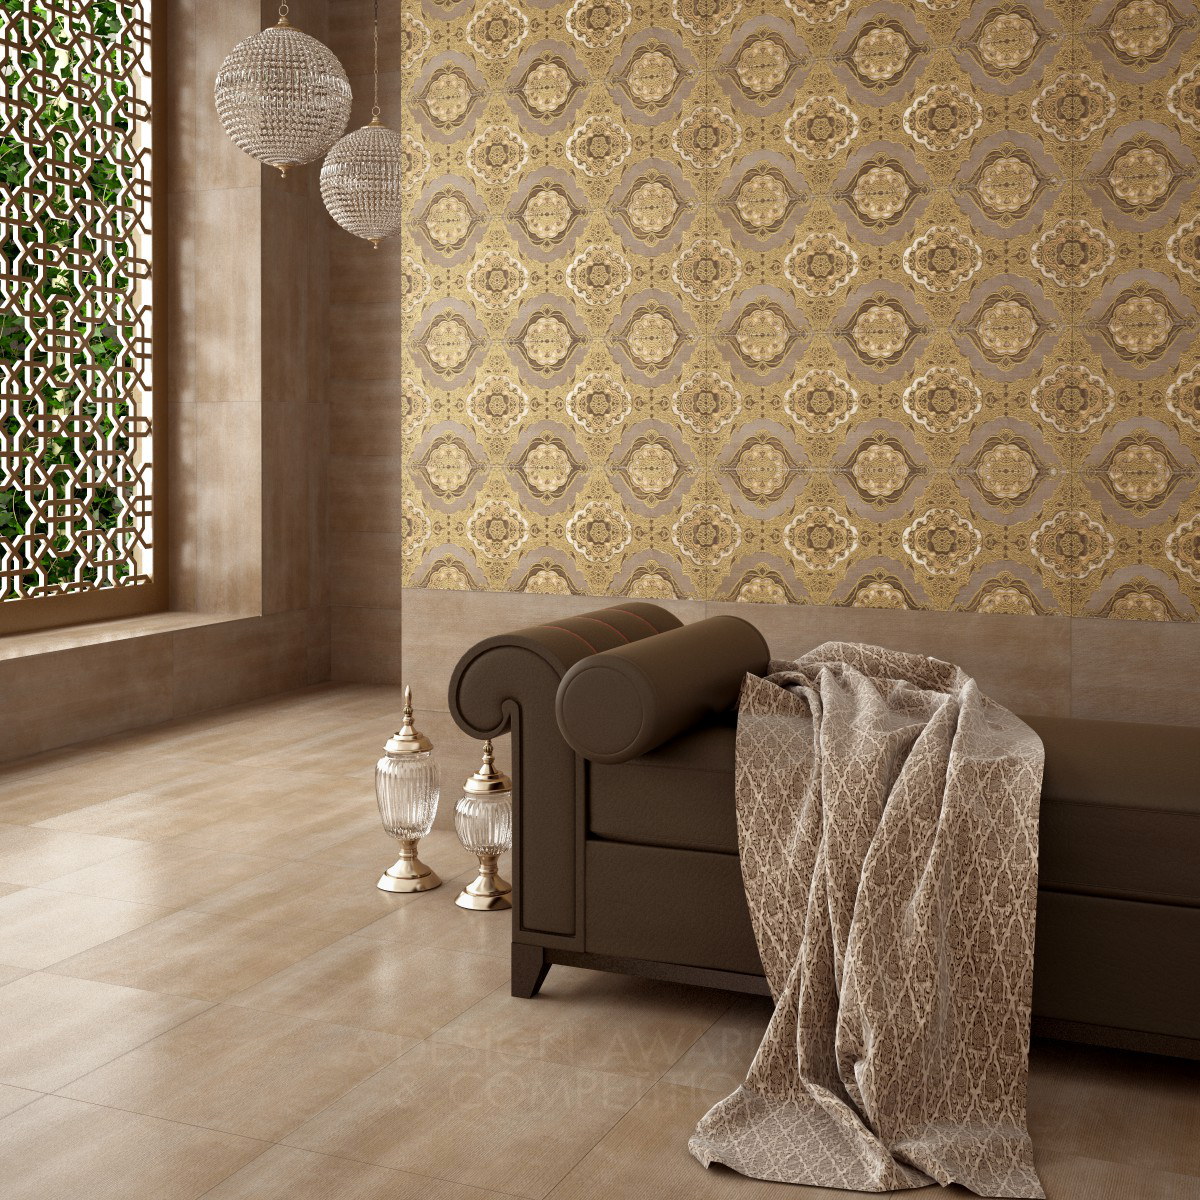 Sultan Ceramic Wall Tiles by Bien Seramik Design Team